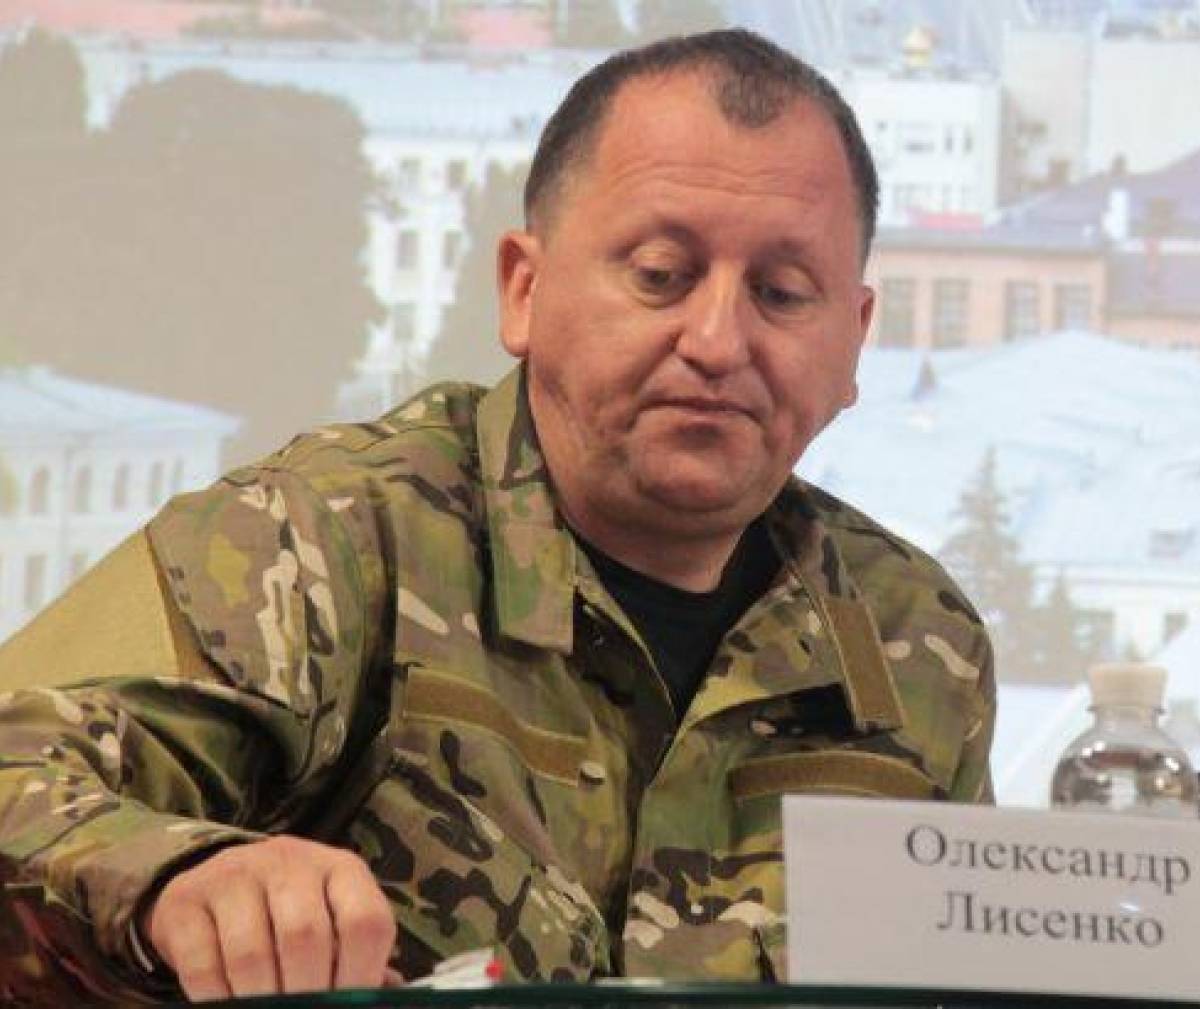 Мэр города Сумы Лисенко пригрозил эвакуирующимся украинцам расстрелом